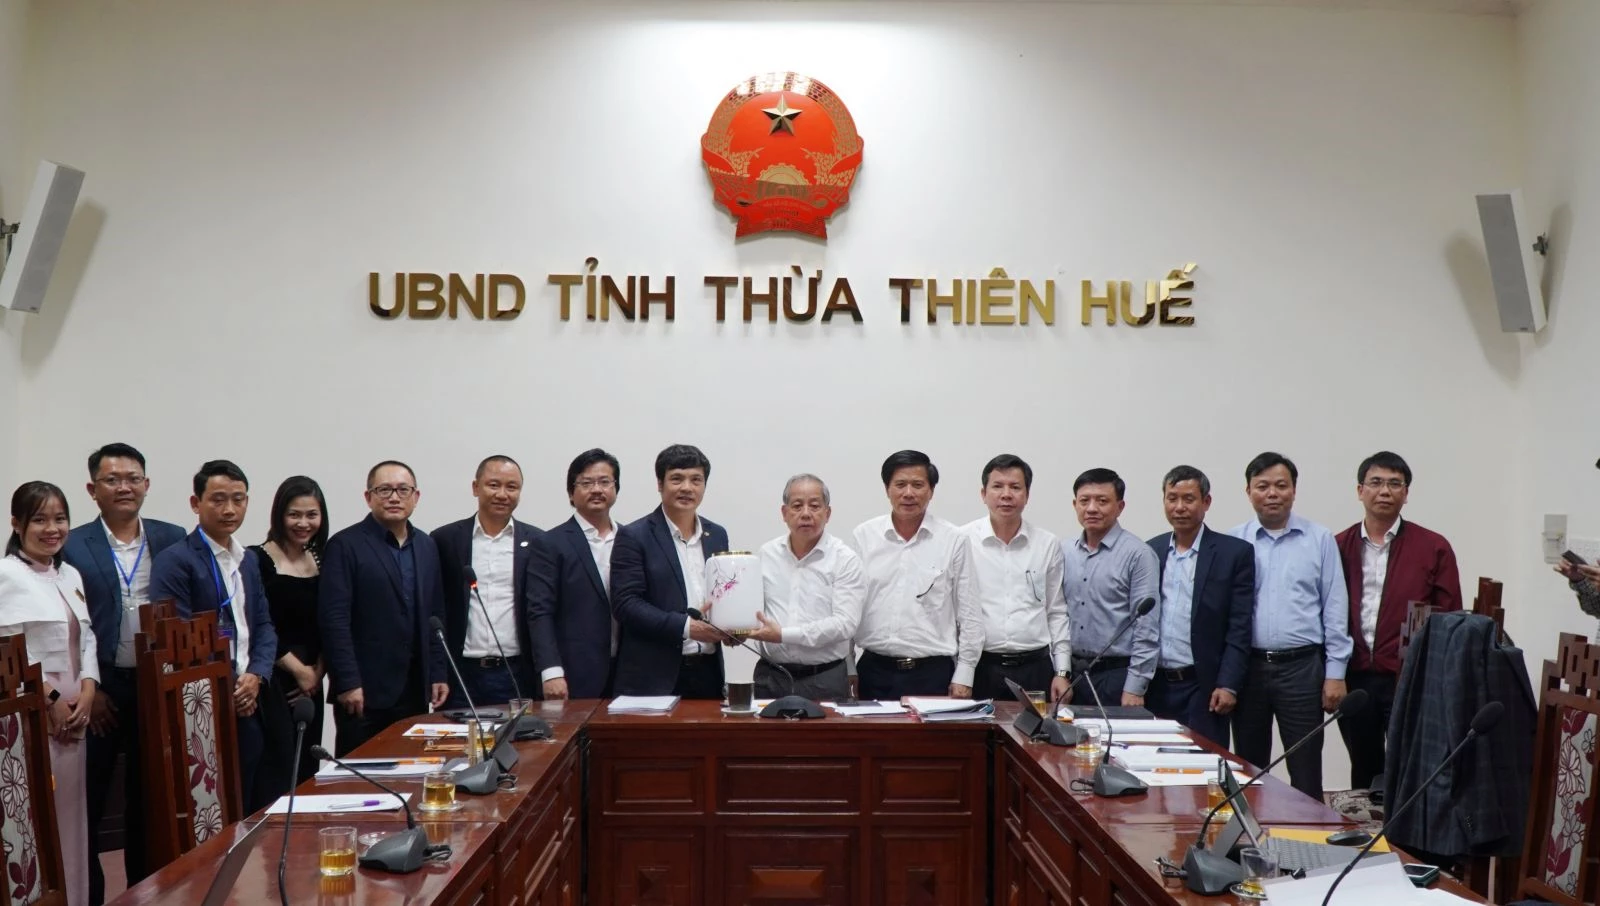 Chủ tịch UBND tỉnh Thừa Thiên Huế Phan Ngọc Thọ trao quà lưu niệm cho đại diện Công ty TNHH Giáo dục FPT.